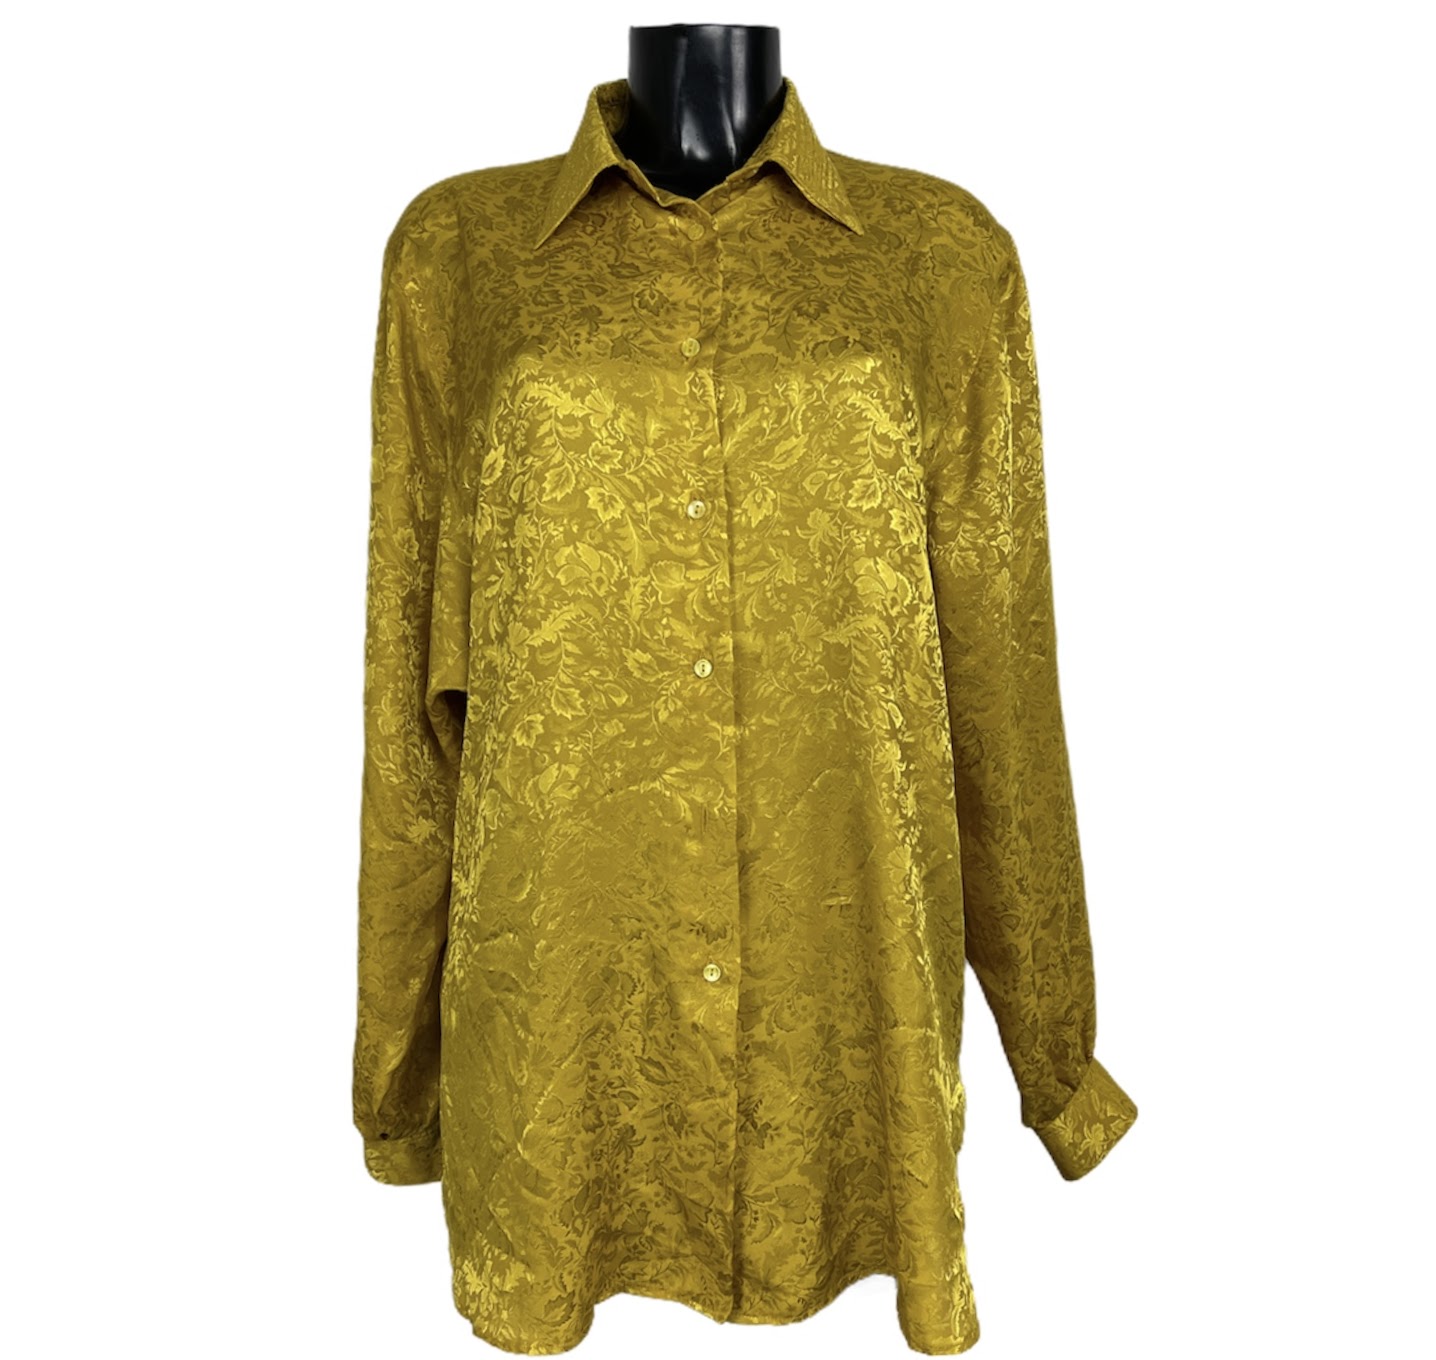 Camicia damascata vintage da donna dorata con bottoni dorati